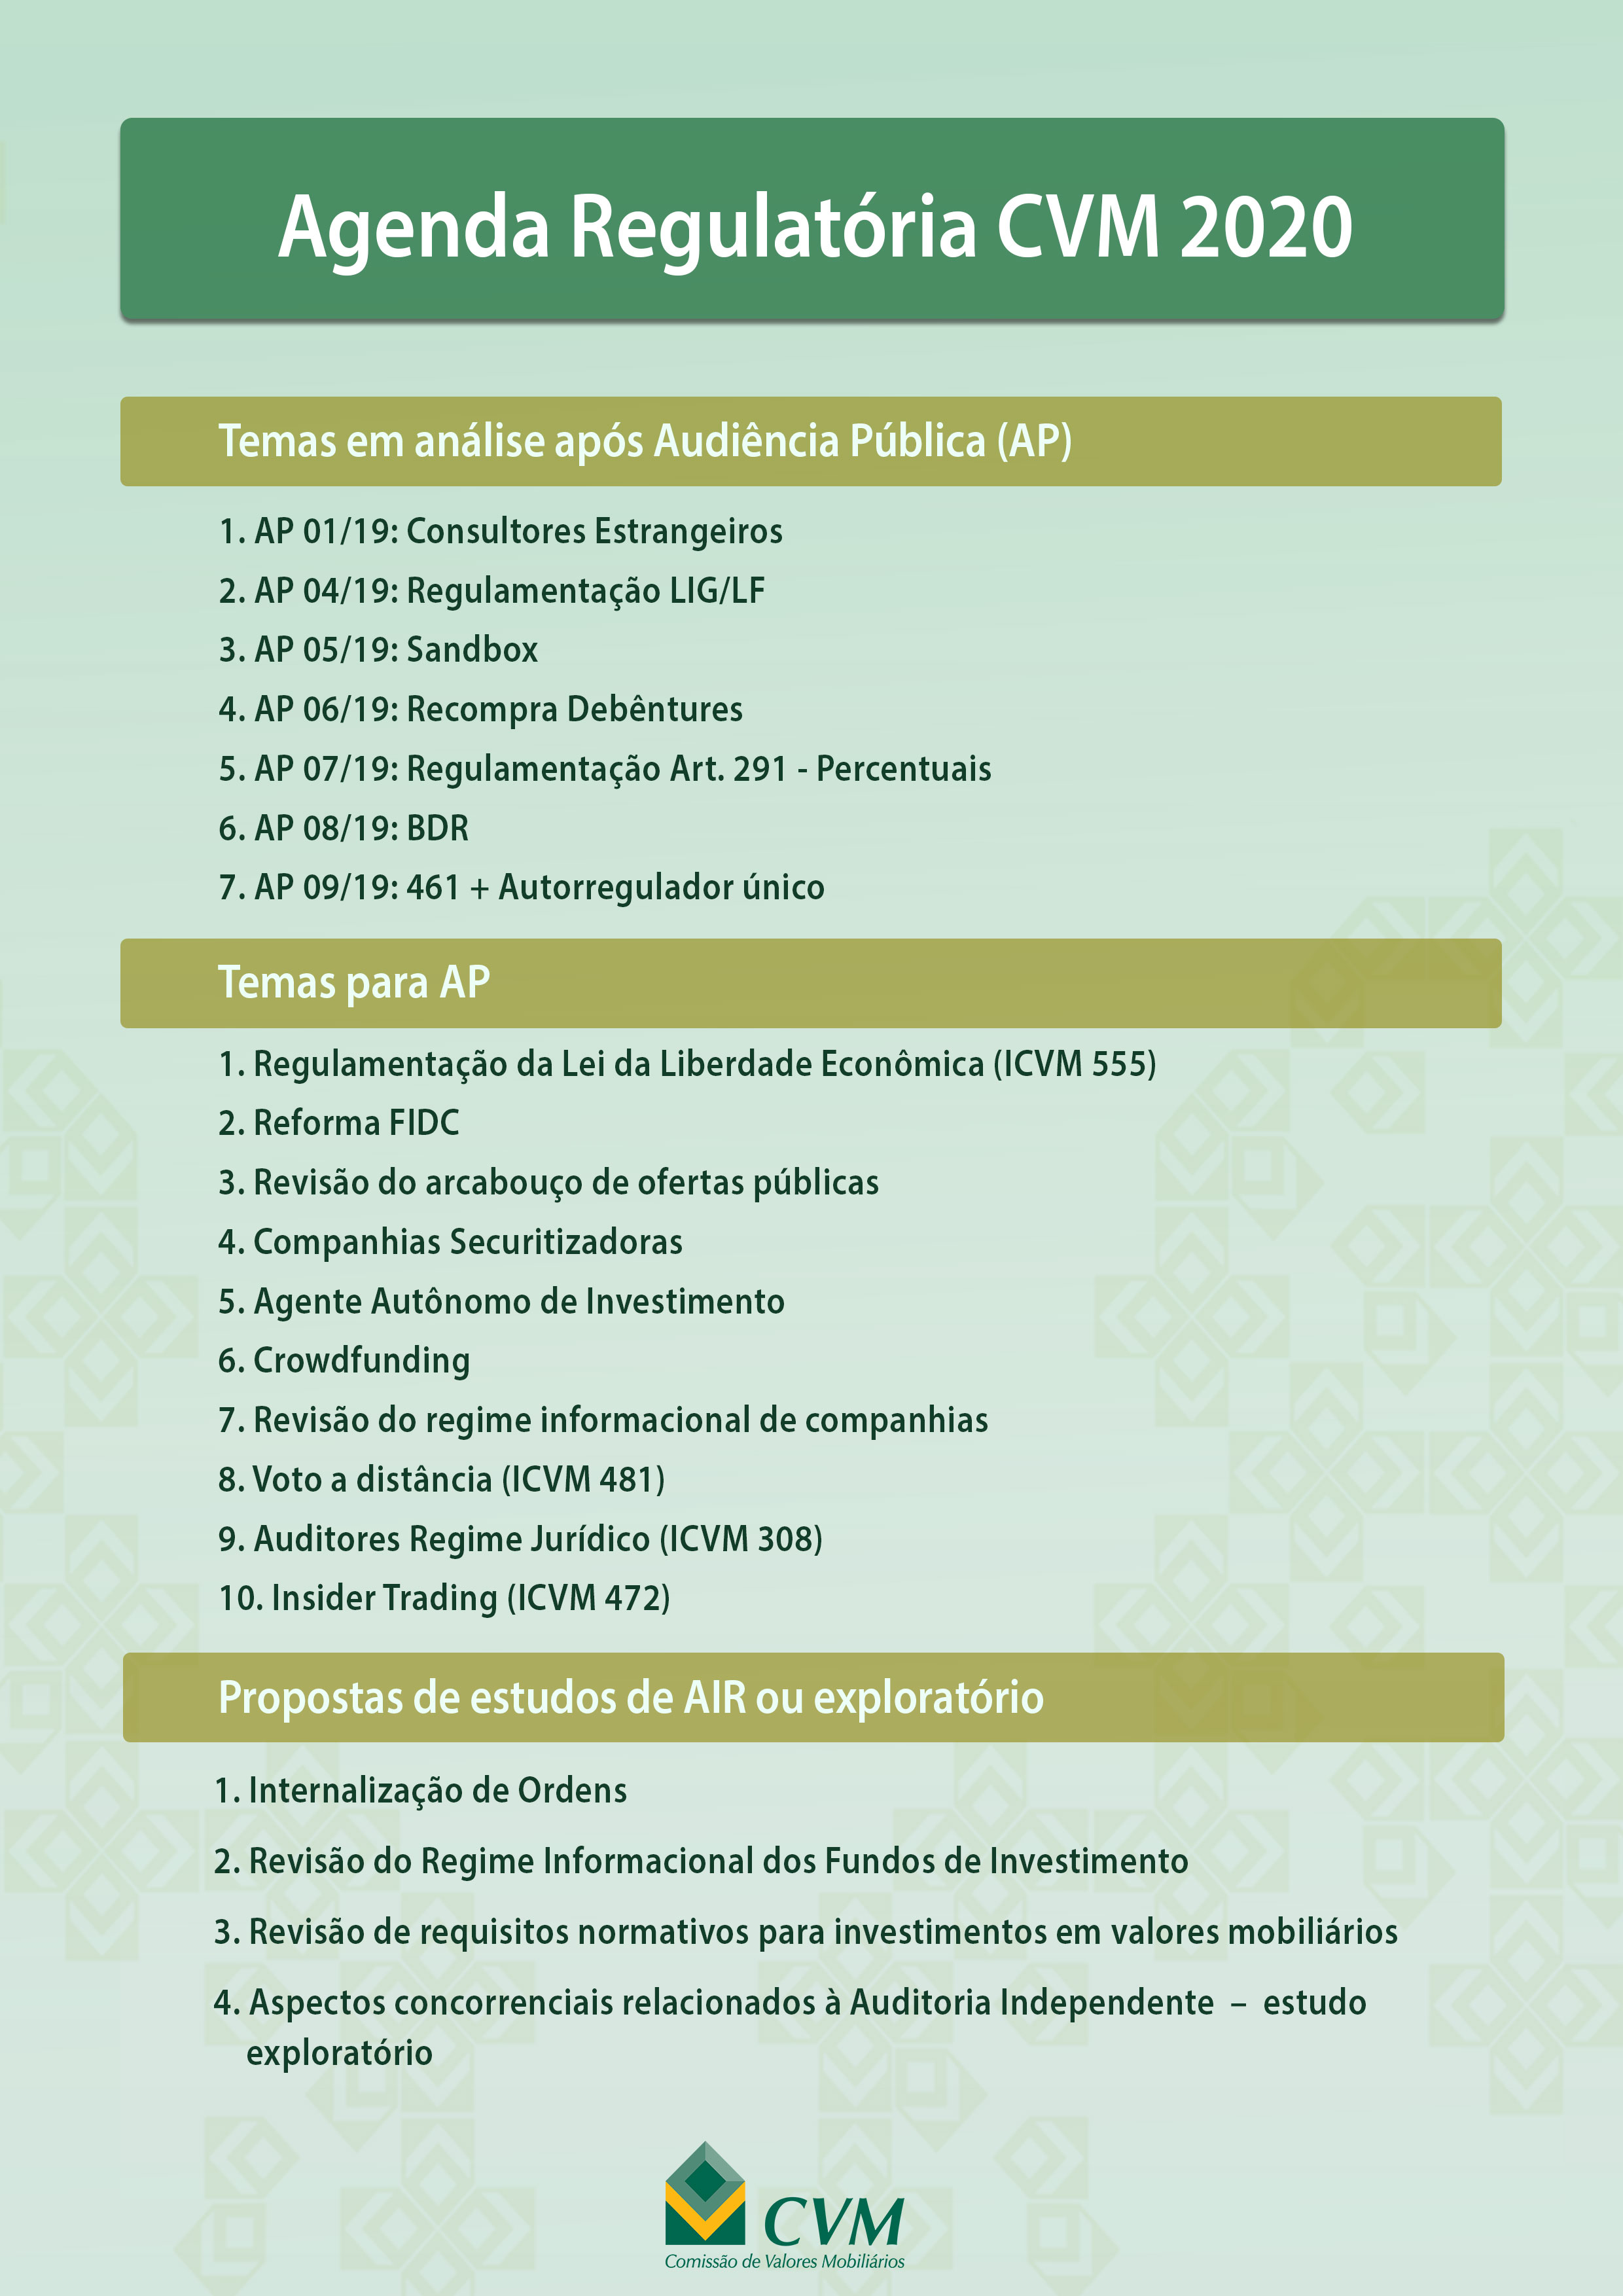 Imagem: Agenda Regulatória da CVM 2020